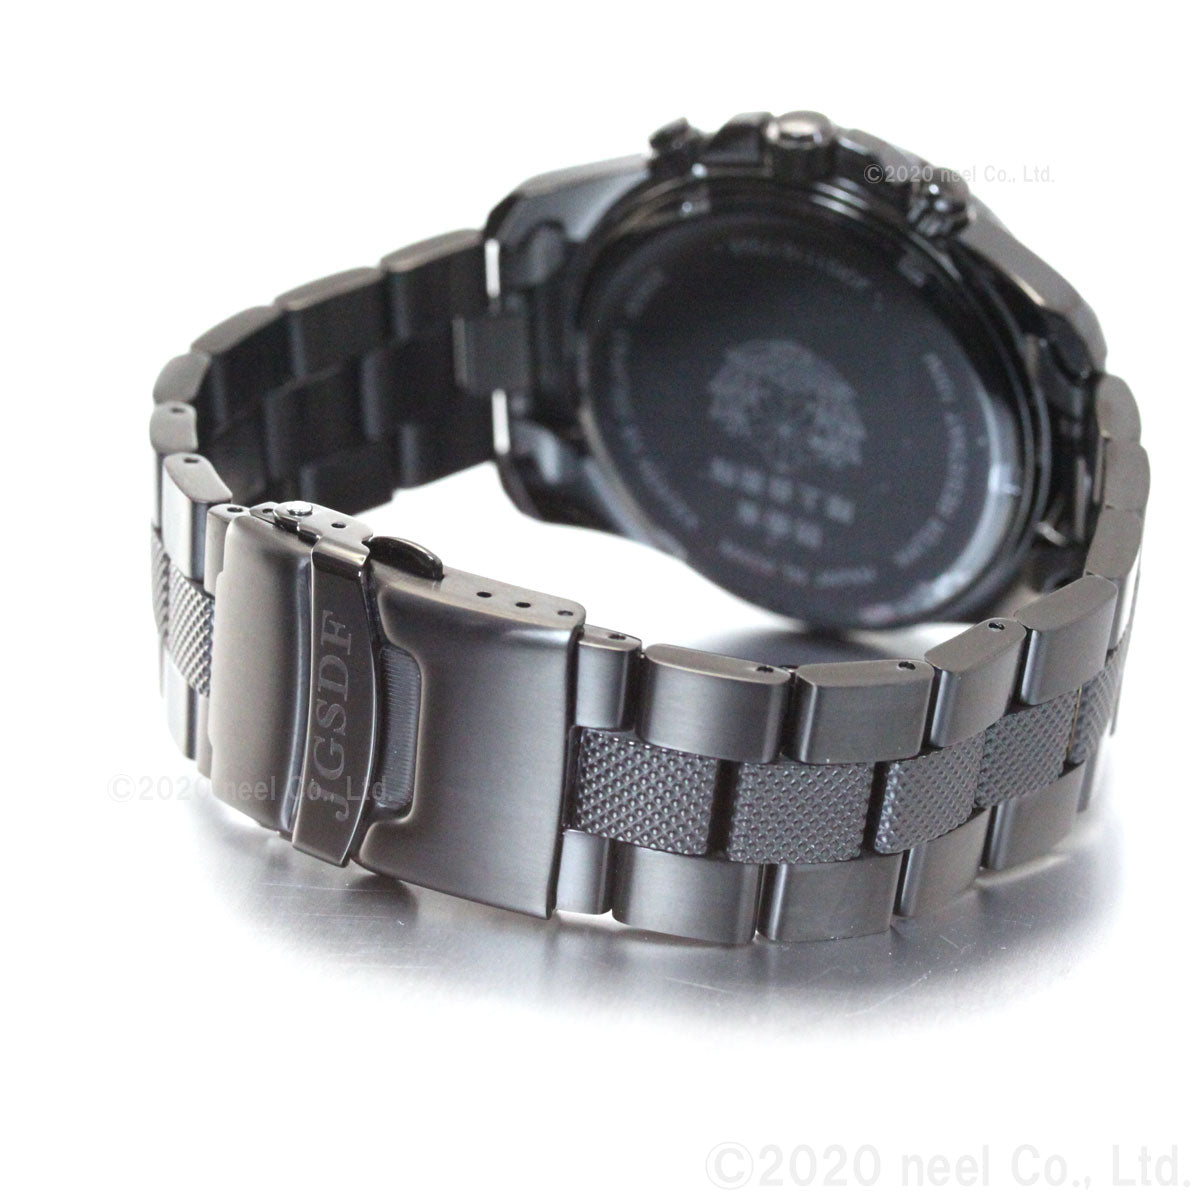 ケンテックス KENTEX 腕時計 メンズ JSDF PRO 陸上自衛隊 プロフェッショナルモデル クロノグラフ S690M-01【正規品】【送料無料】【サイズ調整無料】